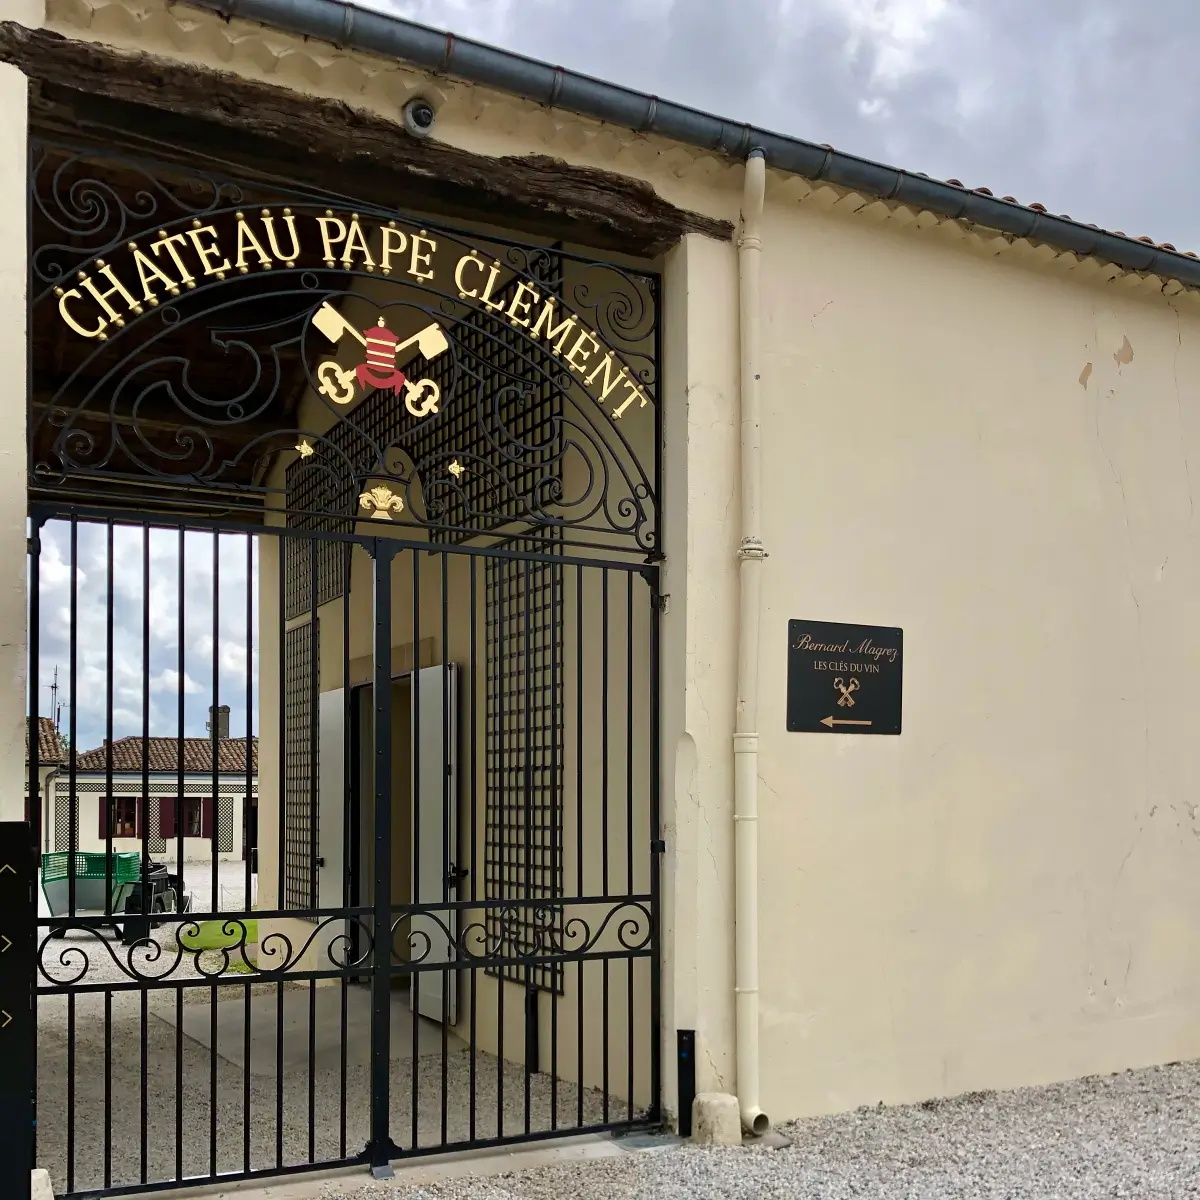 Portail château Pape Clément